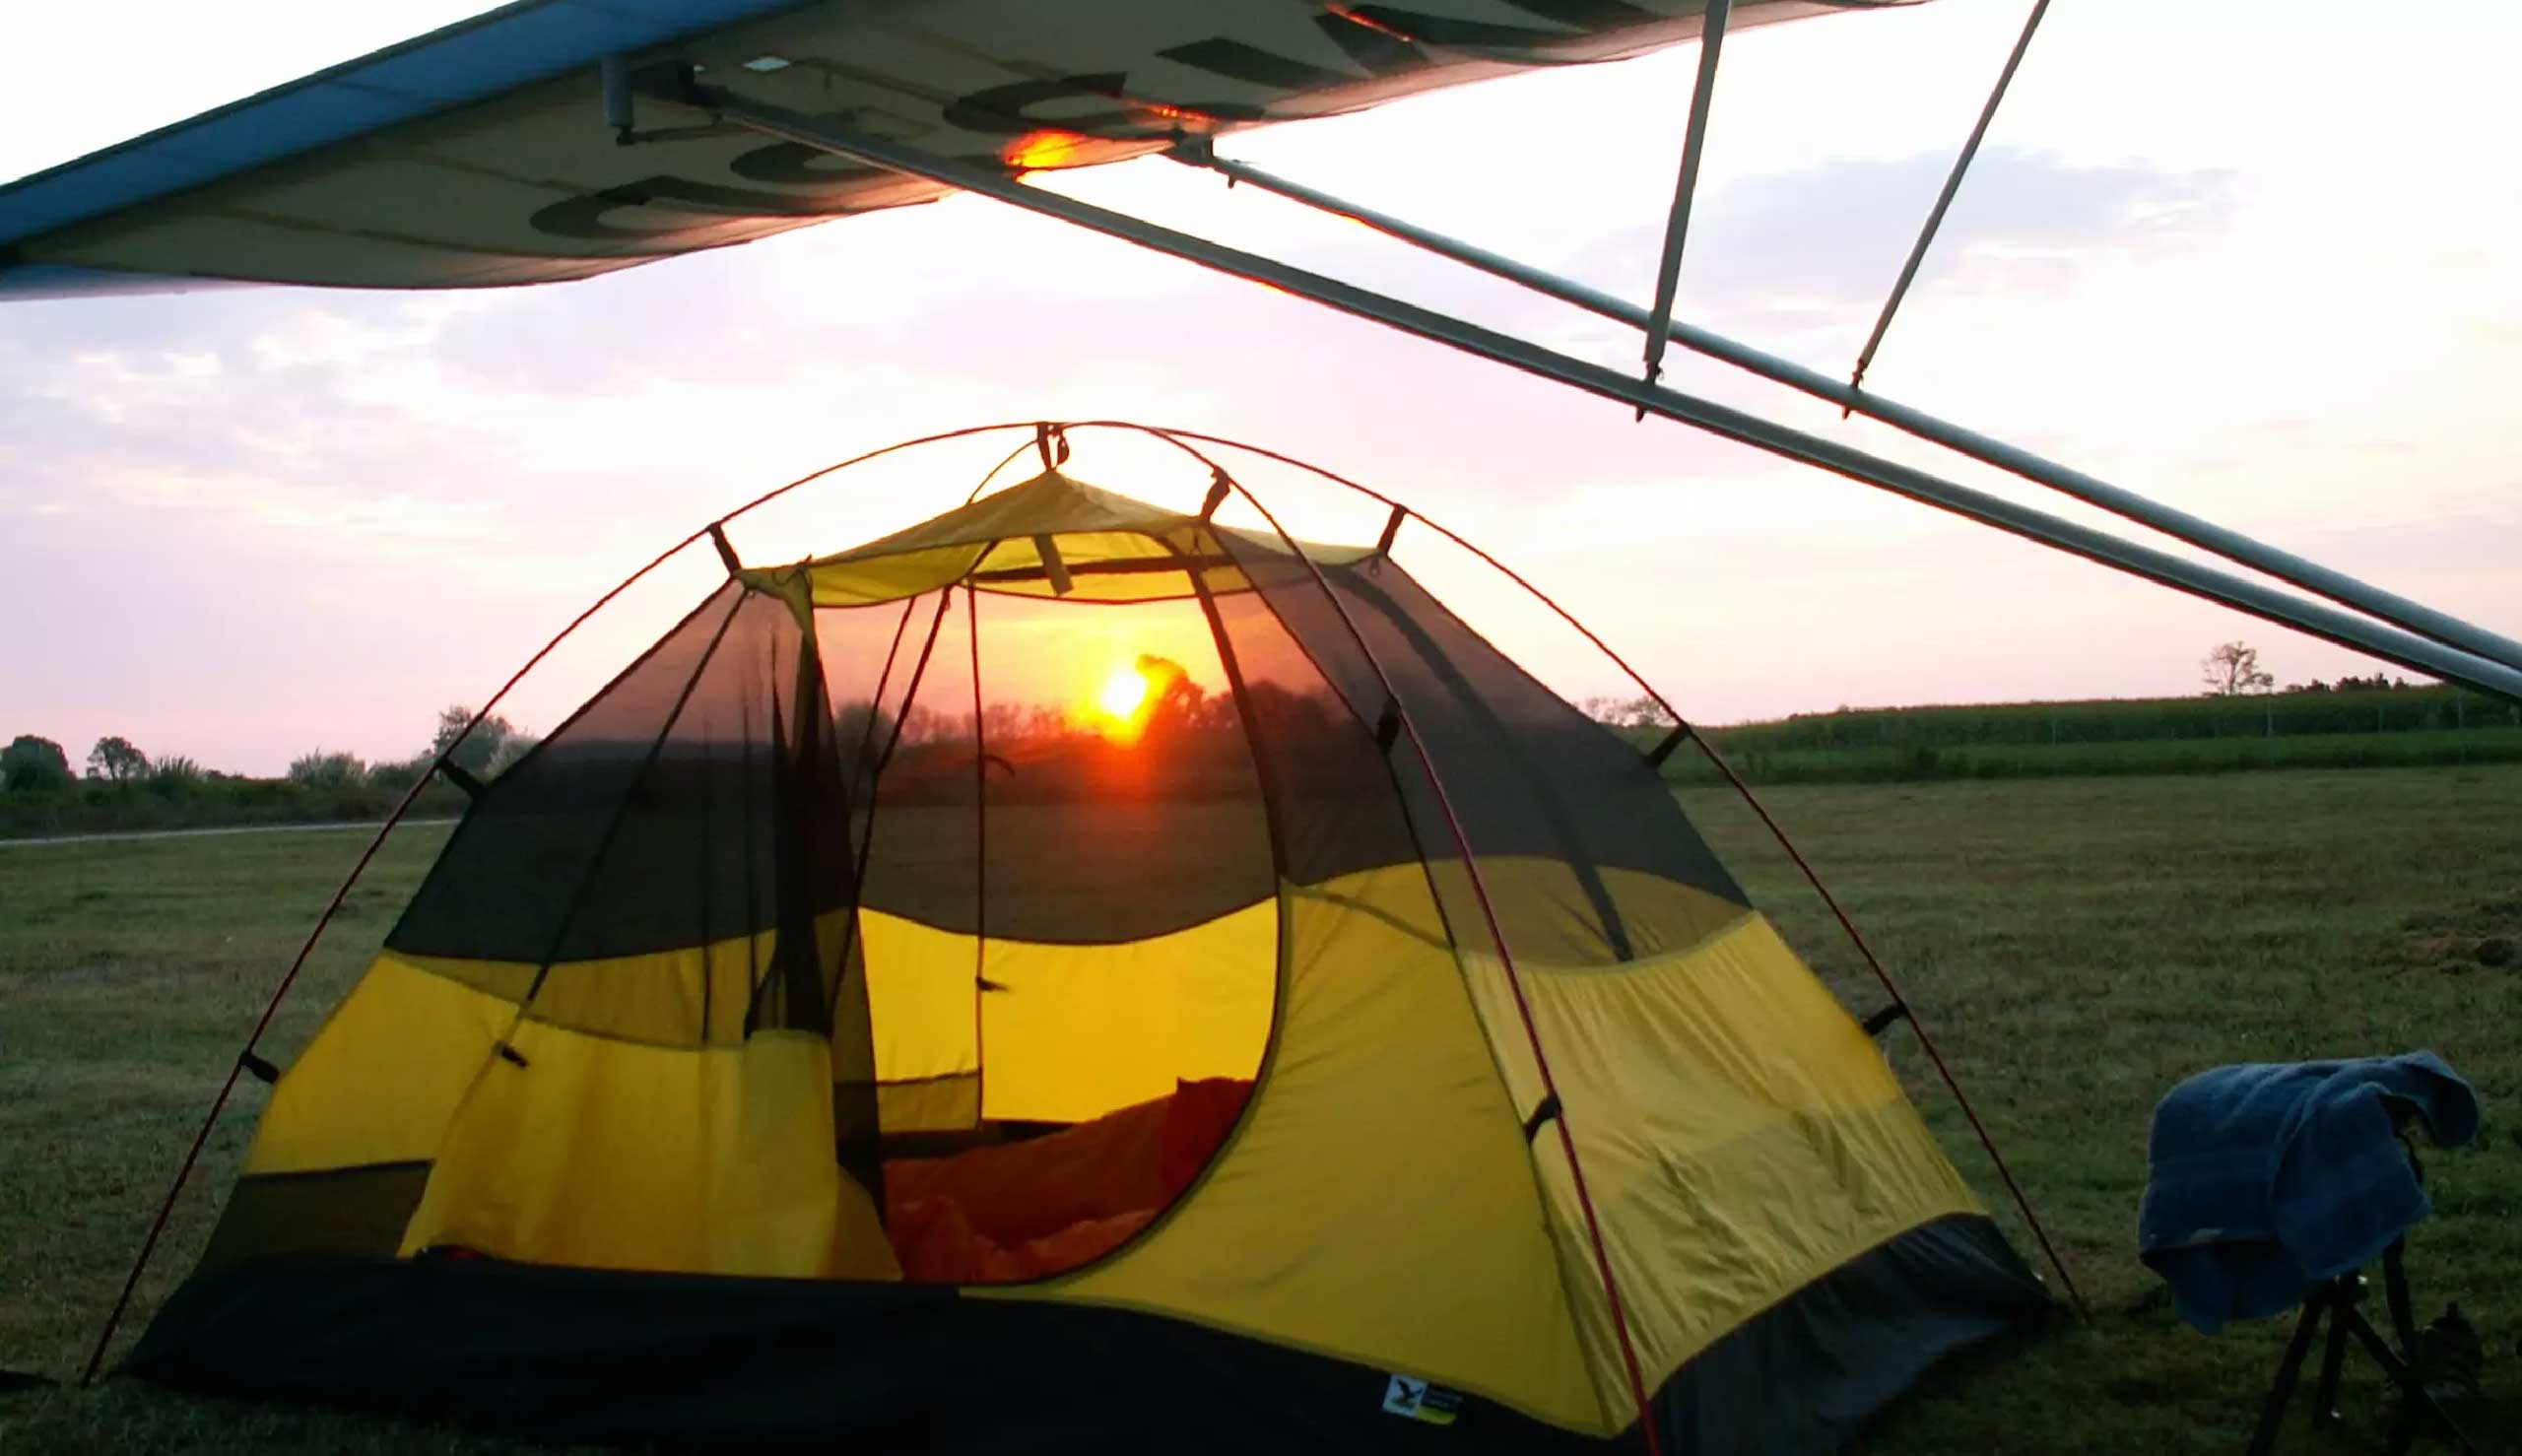 Du kan starte dagen veludhvilet på Dolmar Flyveskoles campingplads og se solopgangen på den åbne mark.